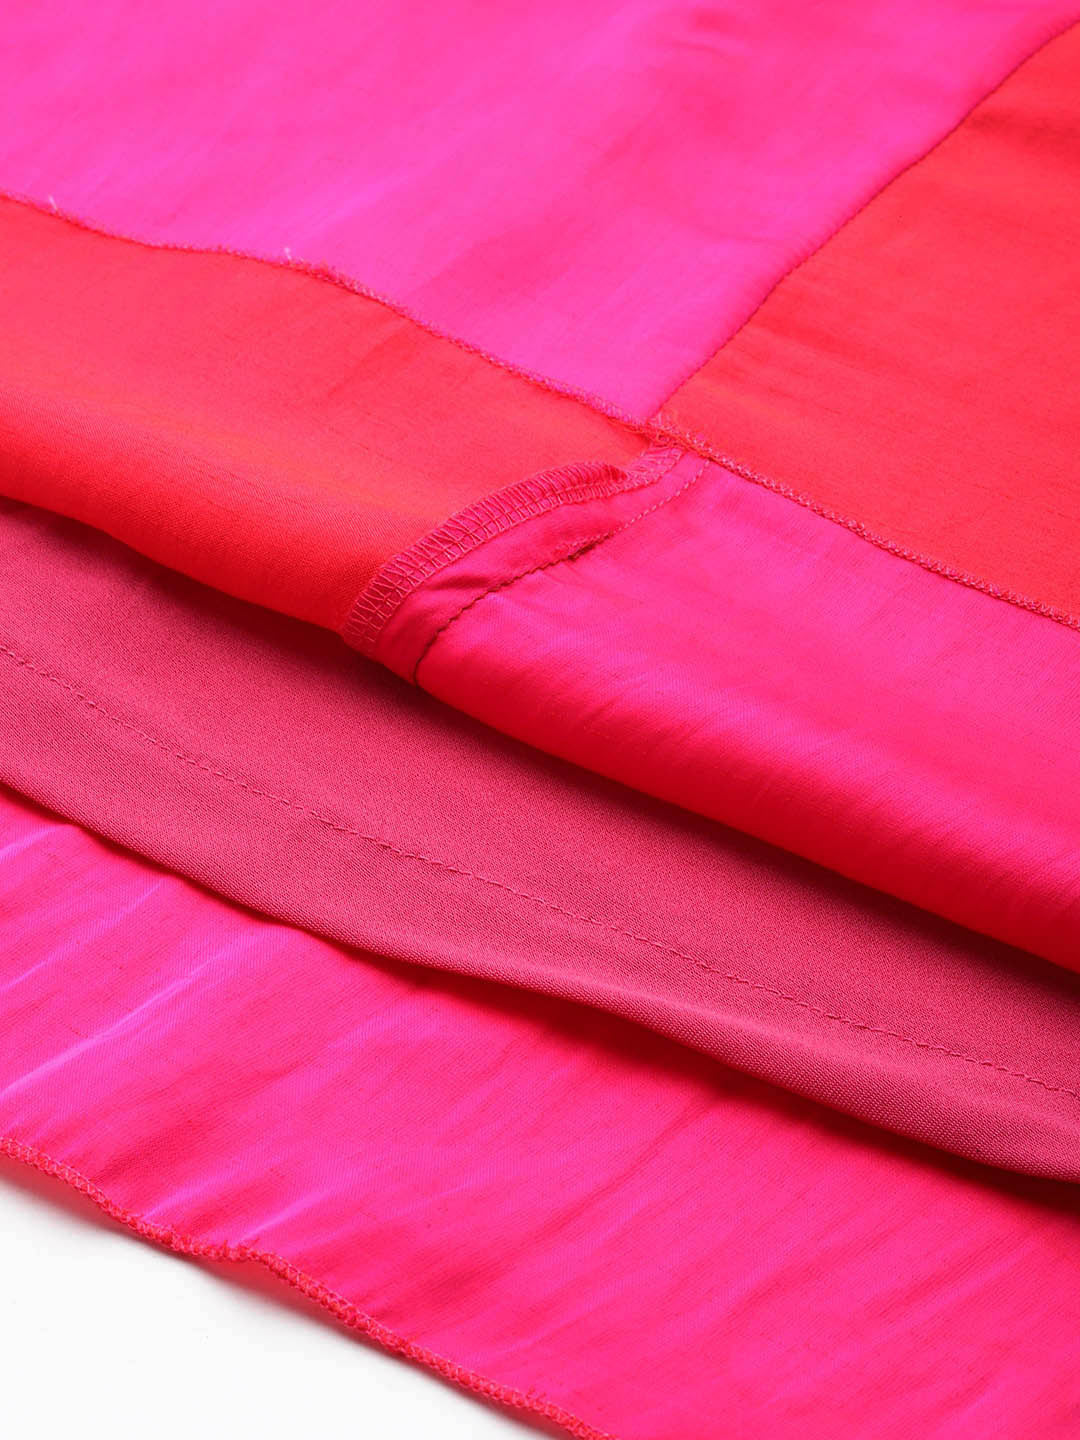 Solid Bright Pink Regular Fit V Neck Three Quarter Bell Sleeve Silk Dress